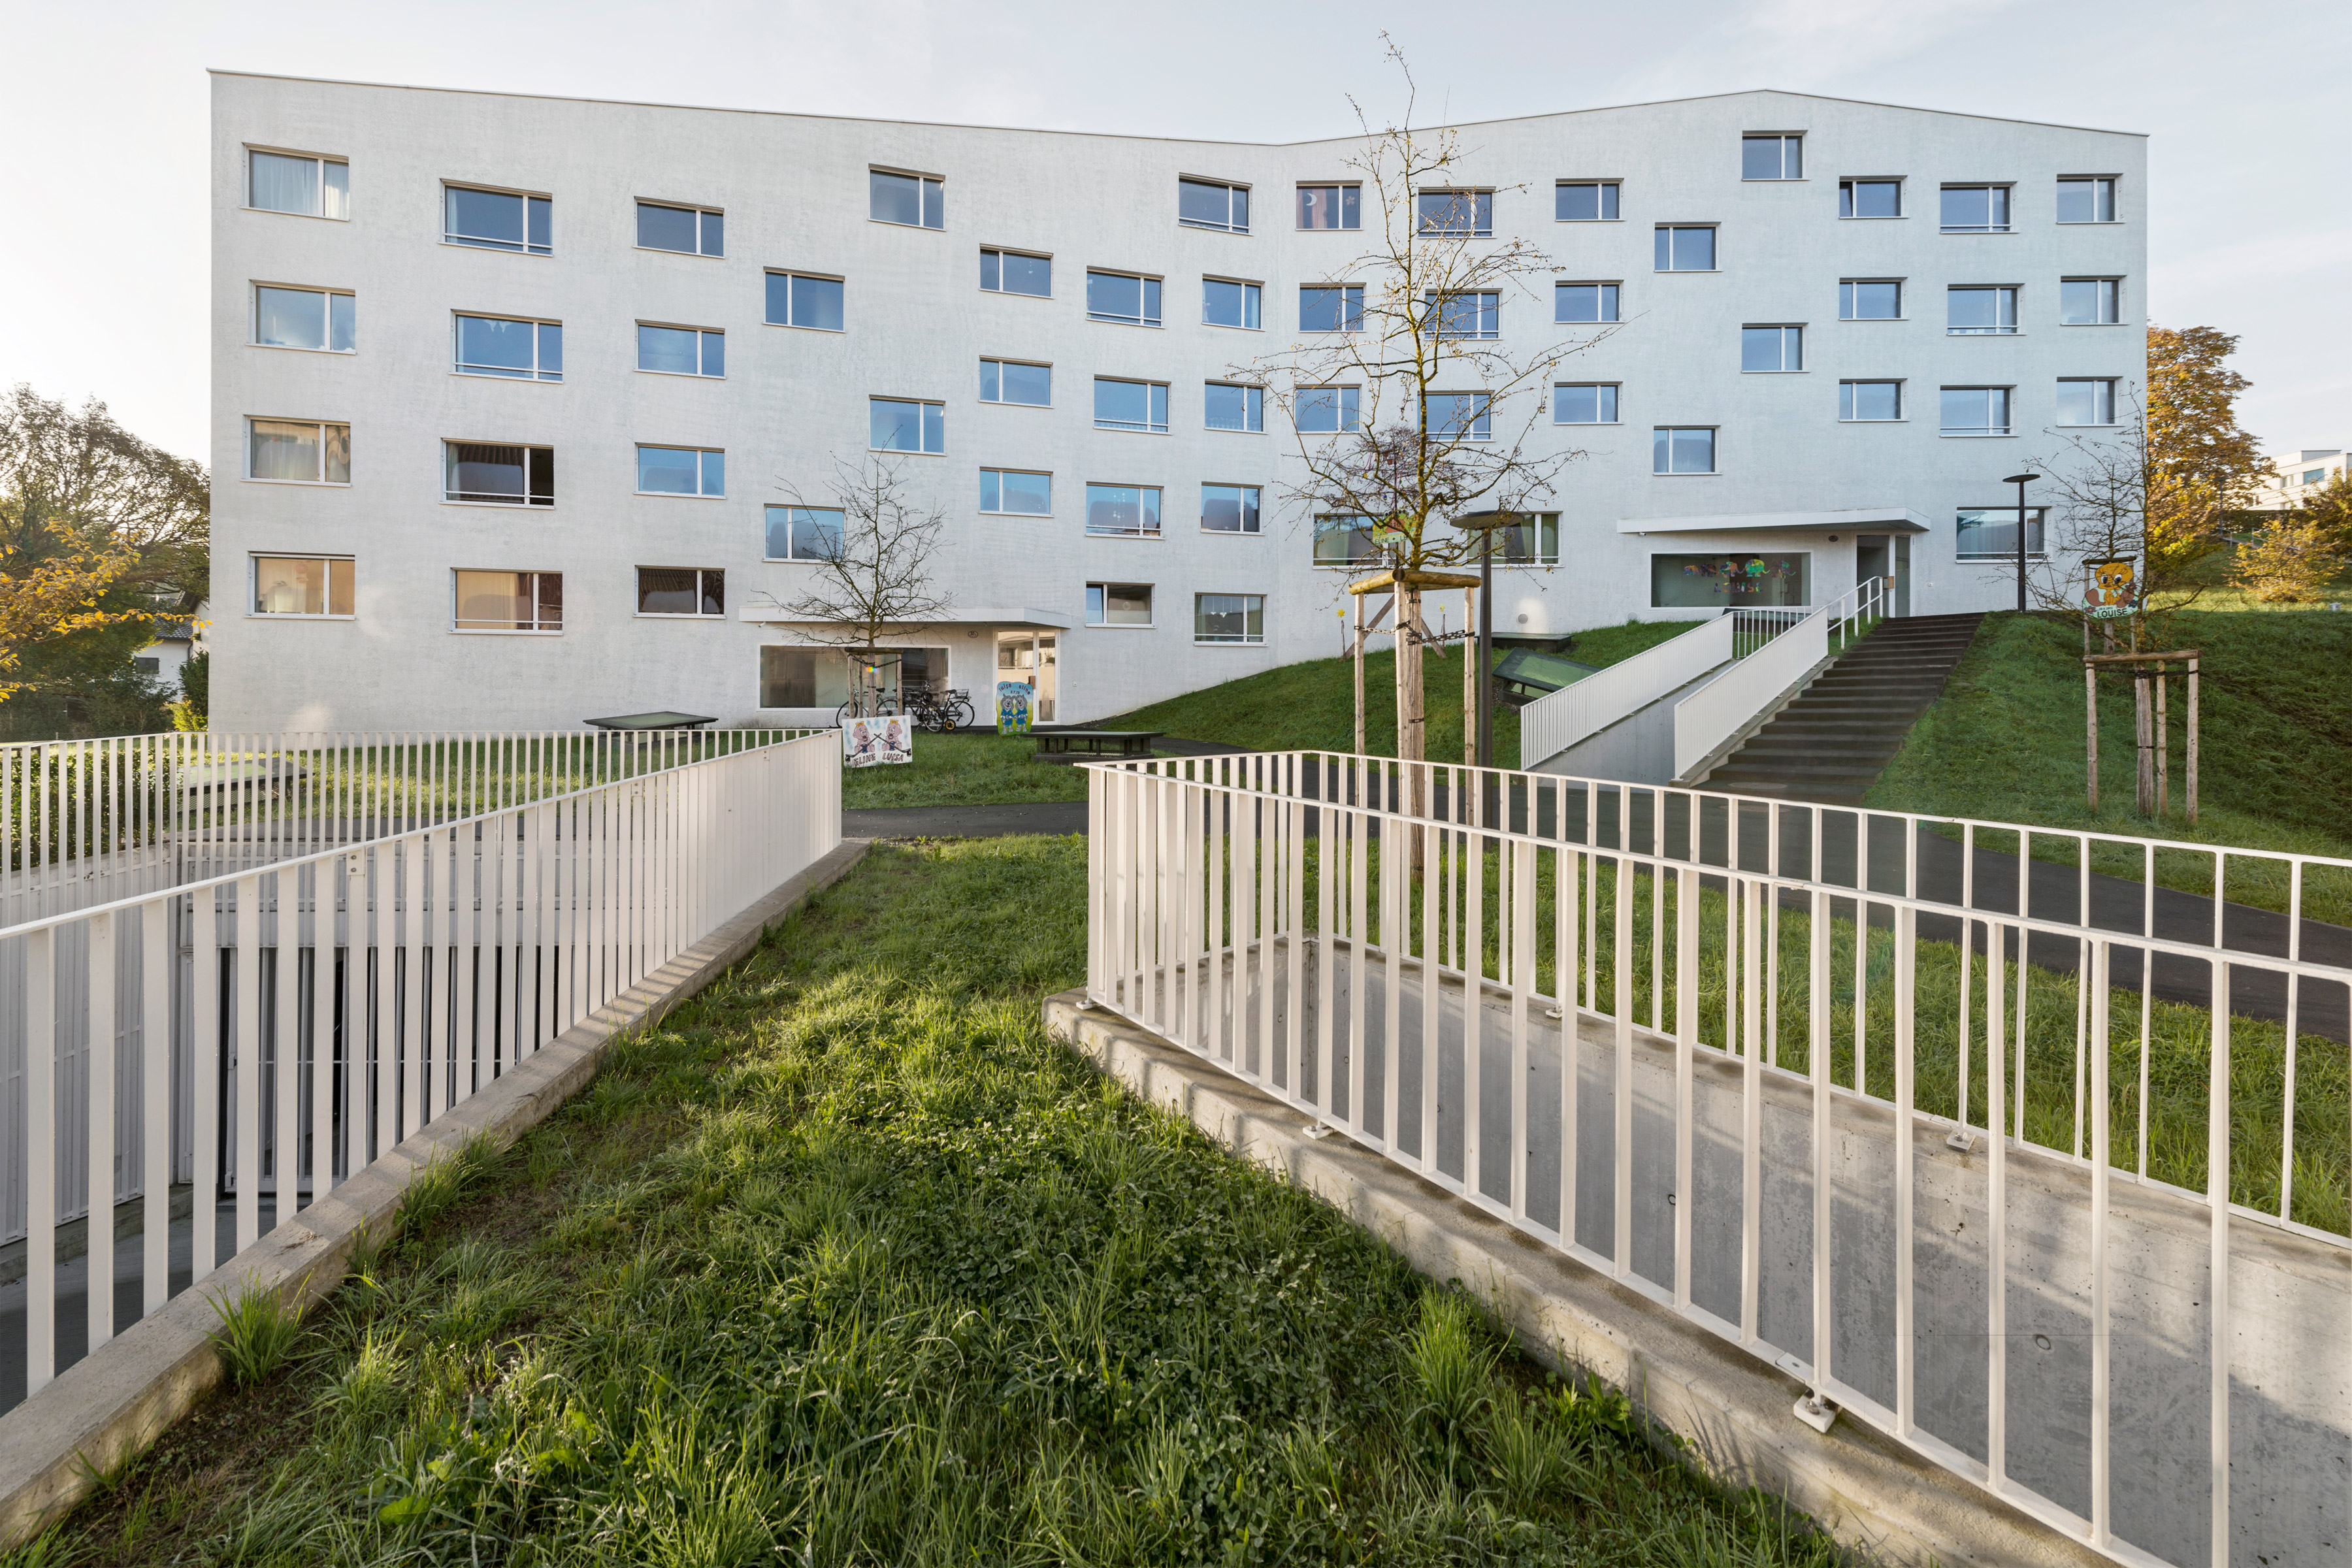 Architecture photo about EBG apartments Geissenstein Luzern